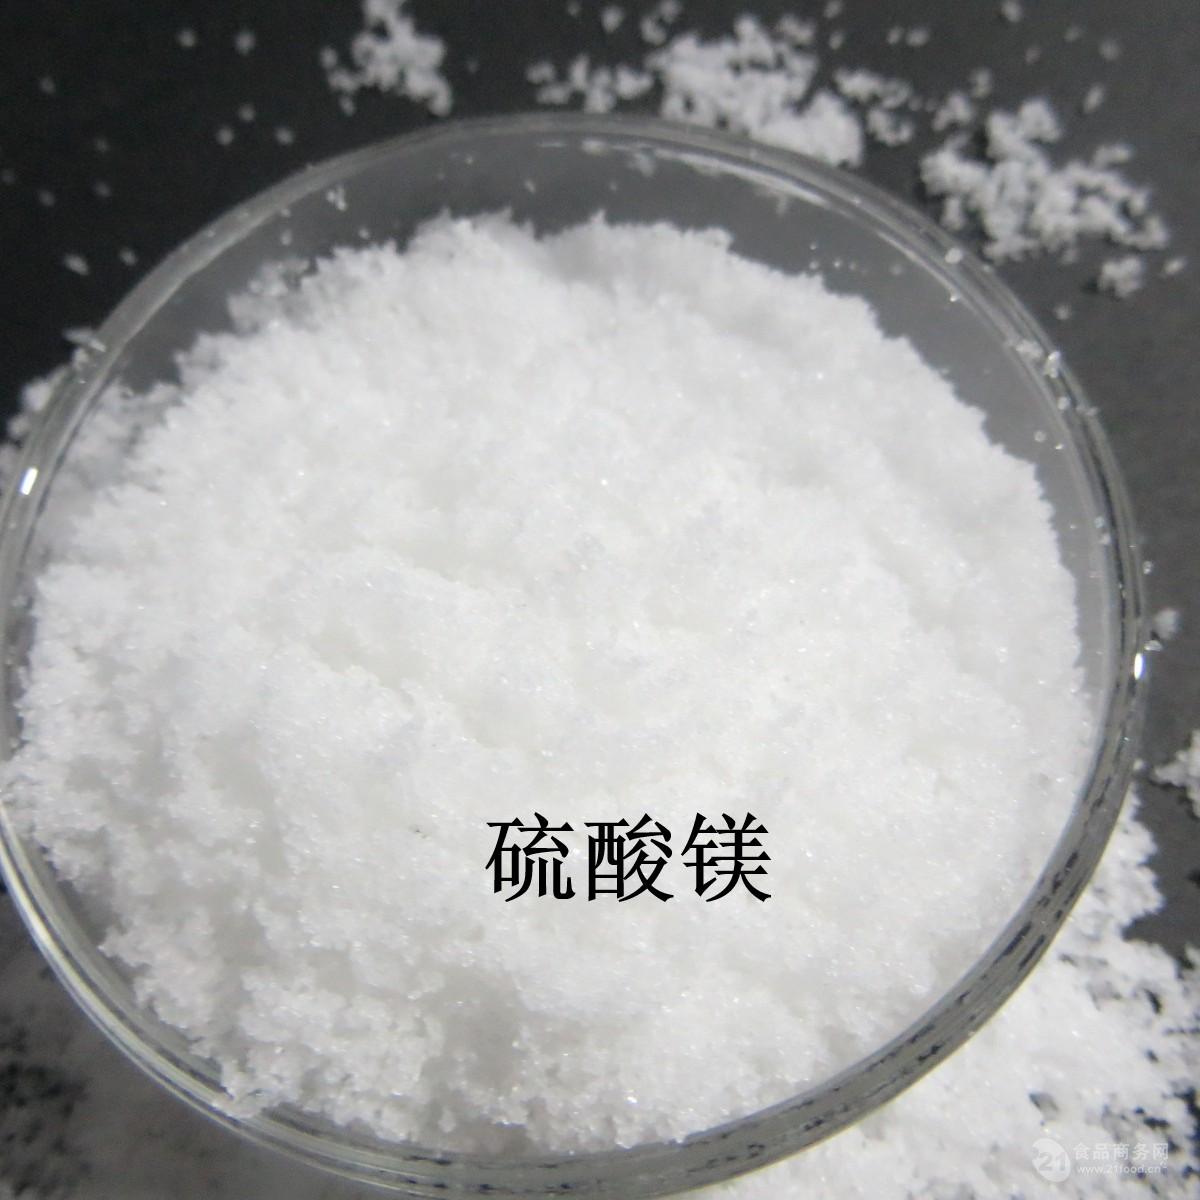 硫酸镁：一种多功能的化学试剂与医疗用品